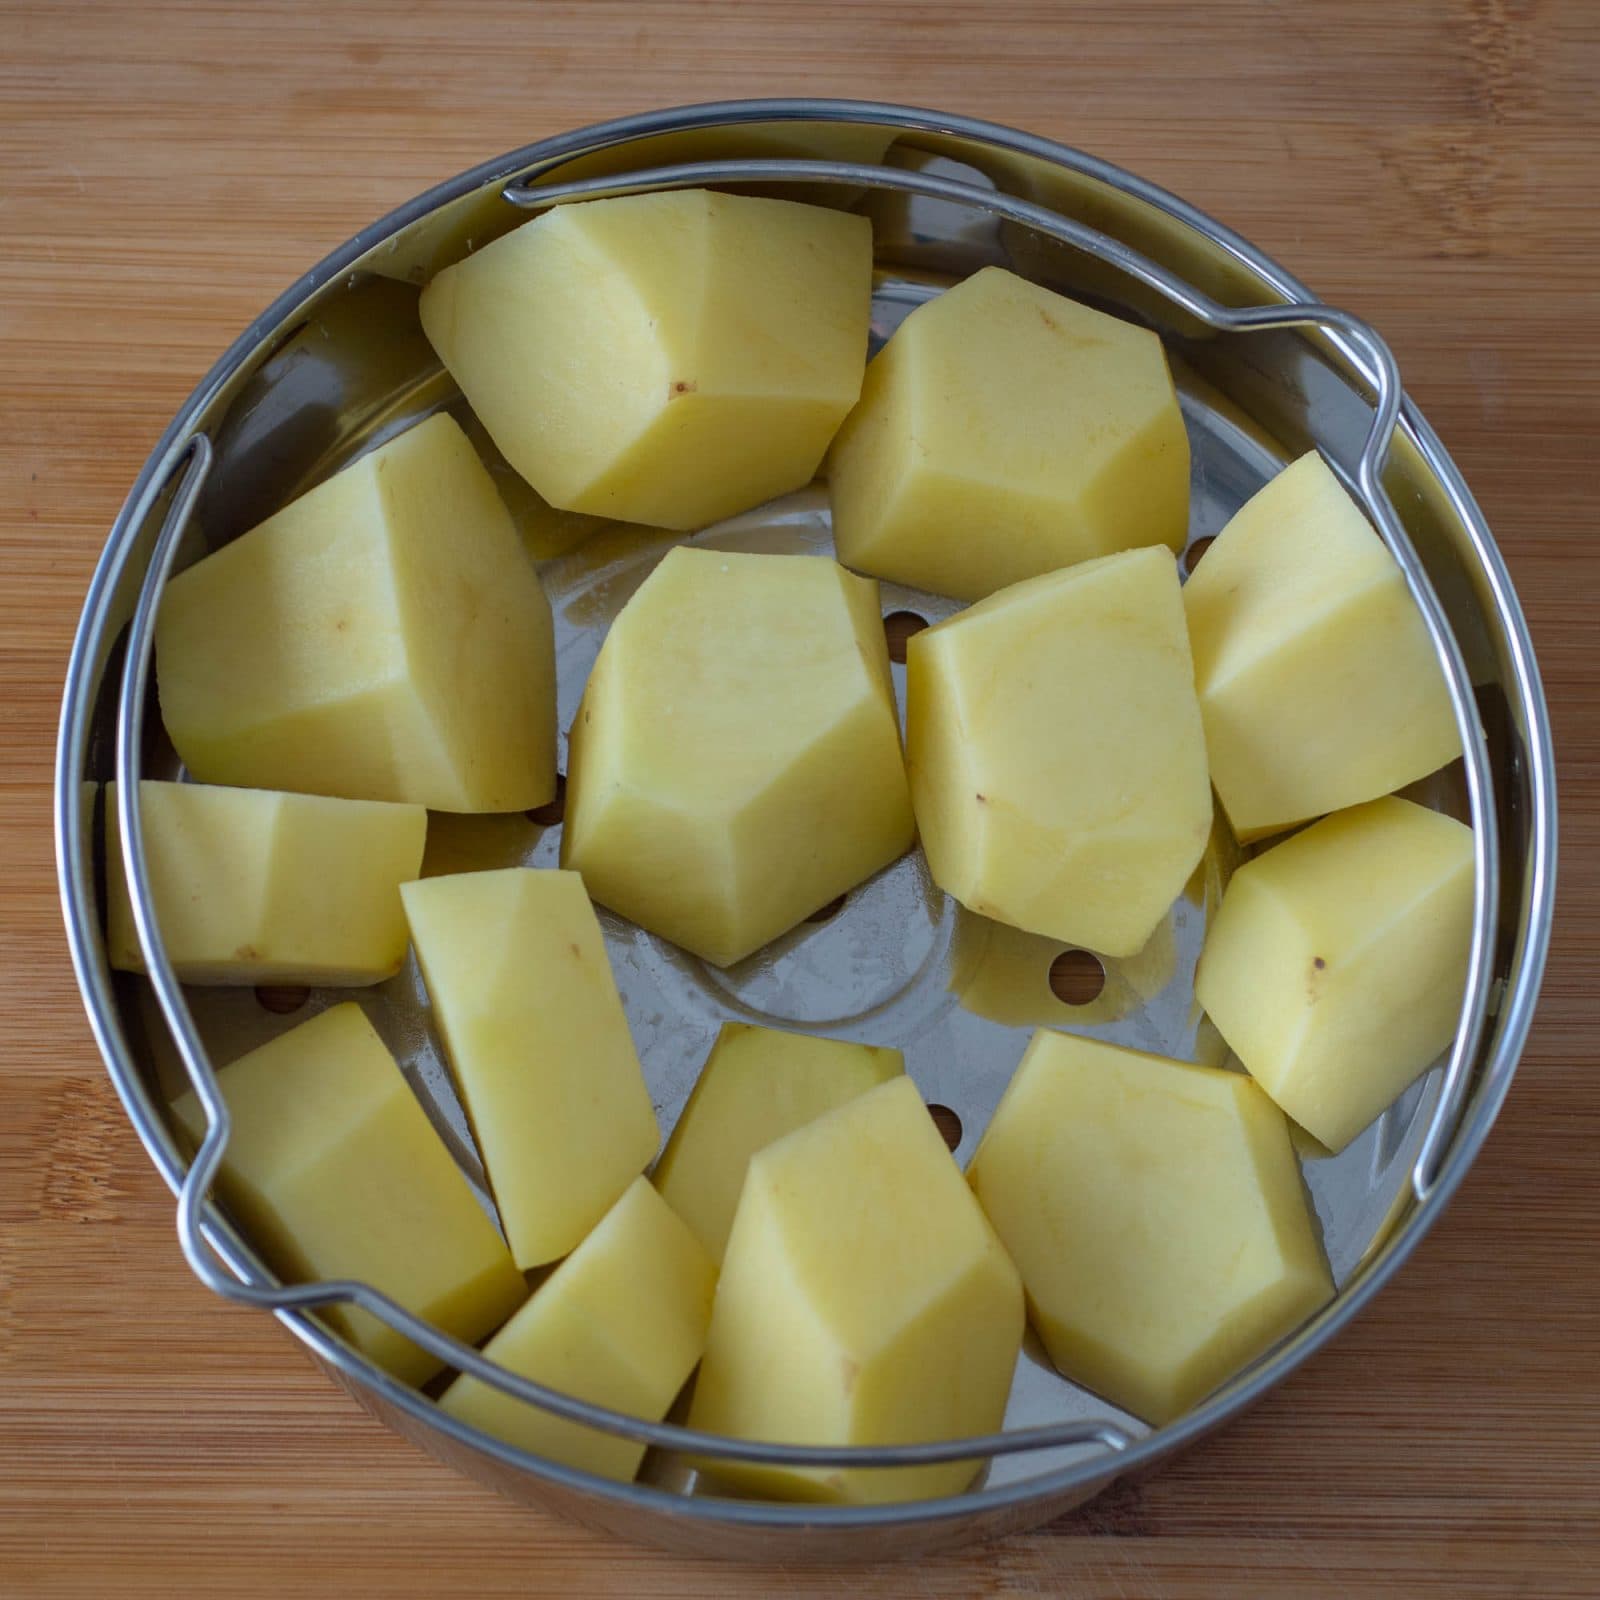 Mashed potatoes in steamer basket for Instant Pot pressure cooker